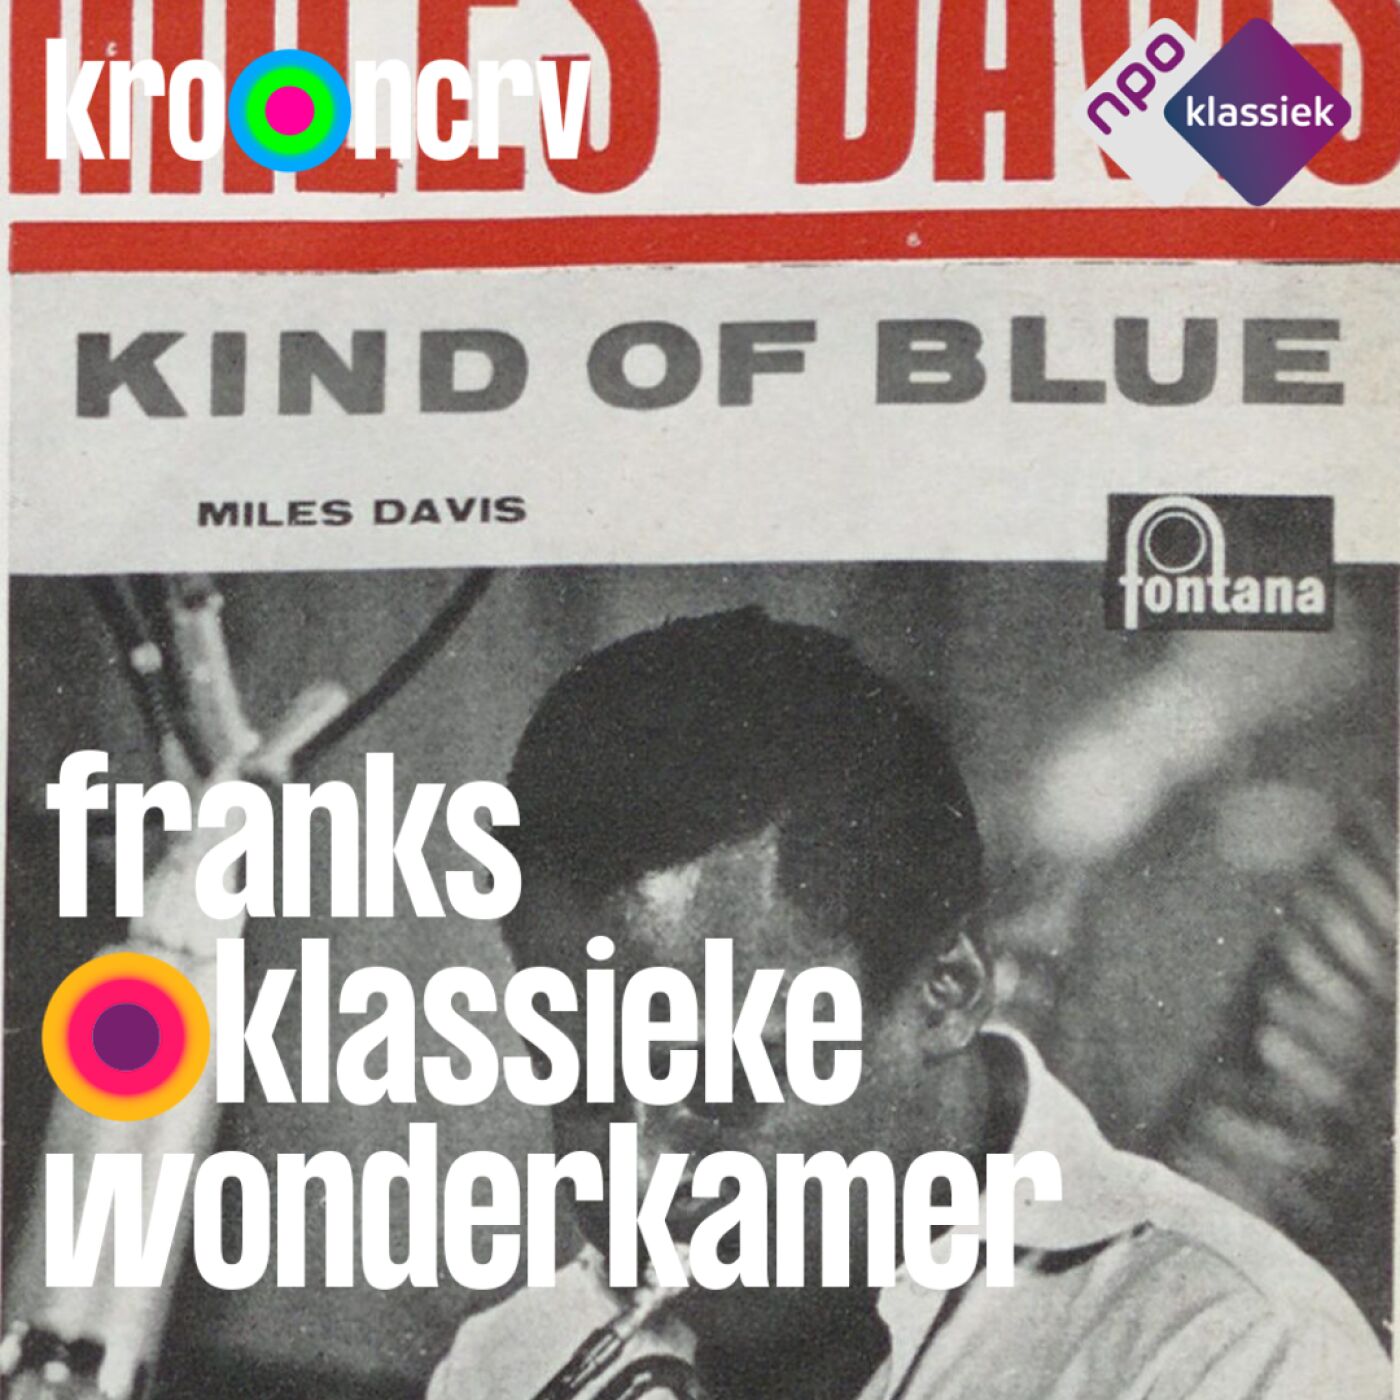 #129 - Franks Klassieke Wonderkamer - ‘Kind of Blue in Green’